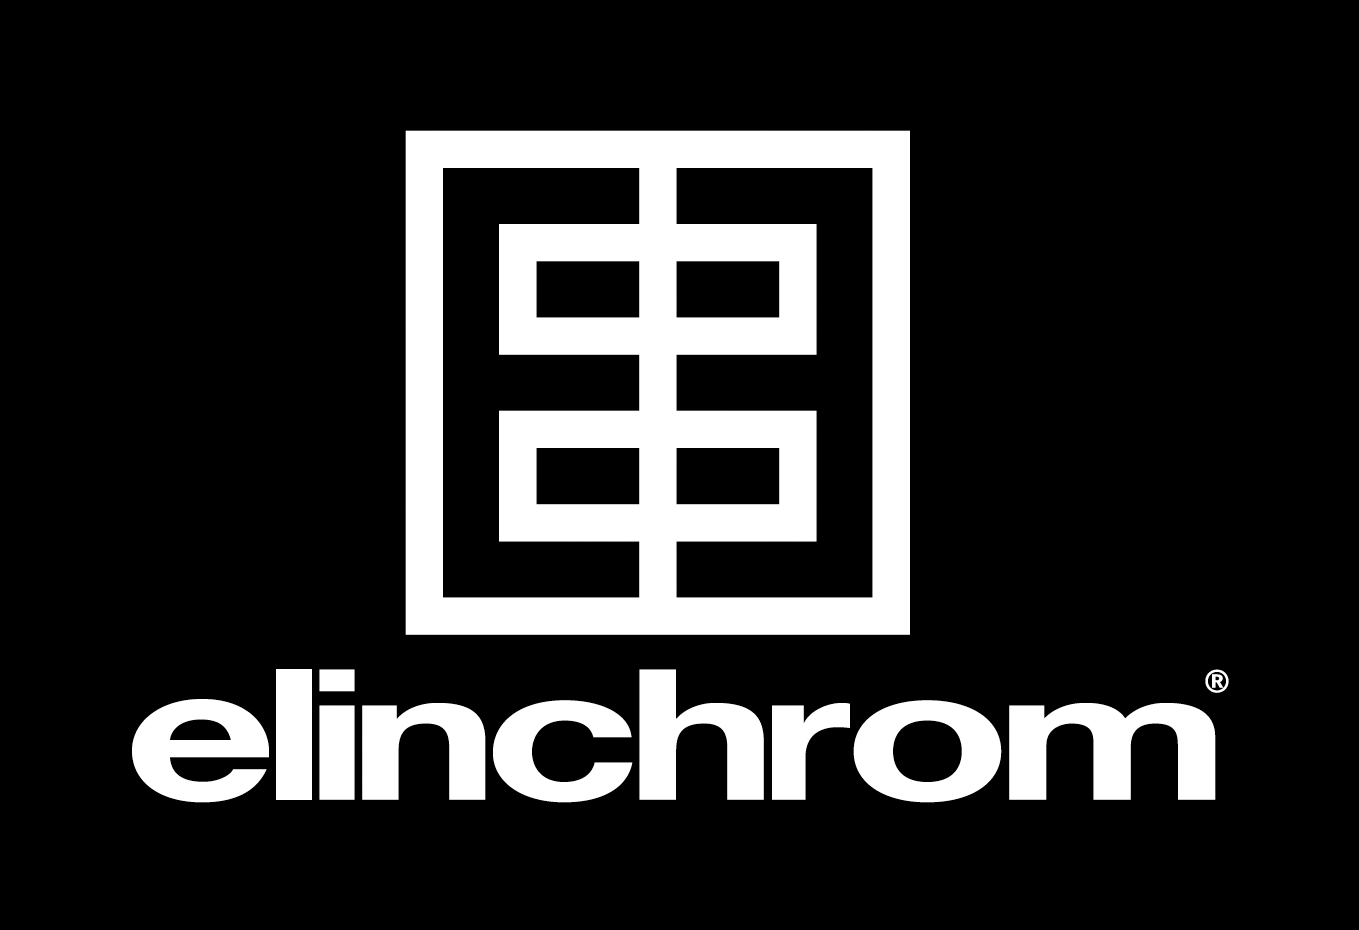 elinchrom-hires-bw-logo